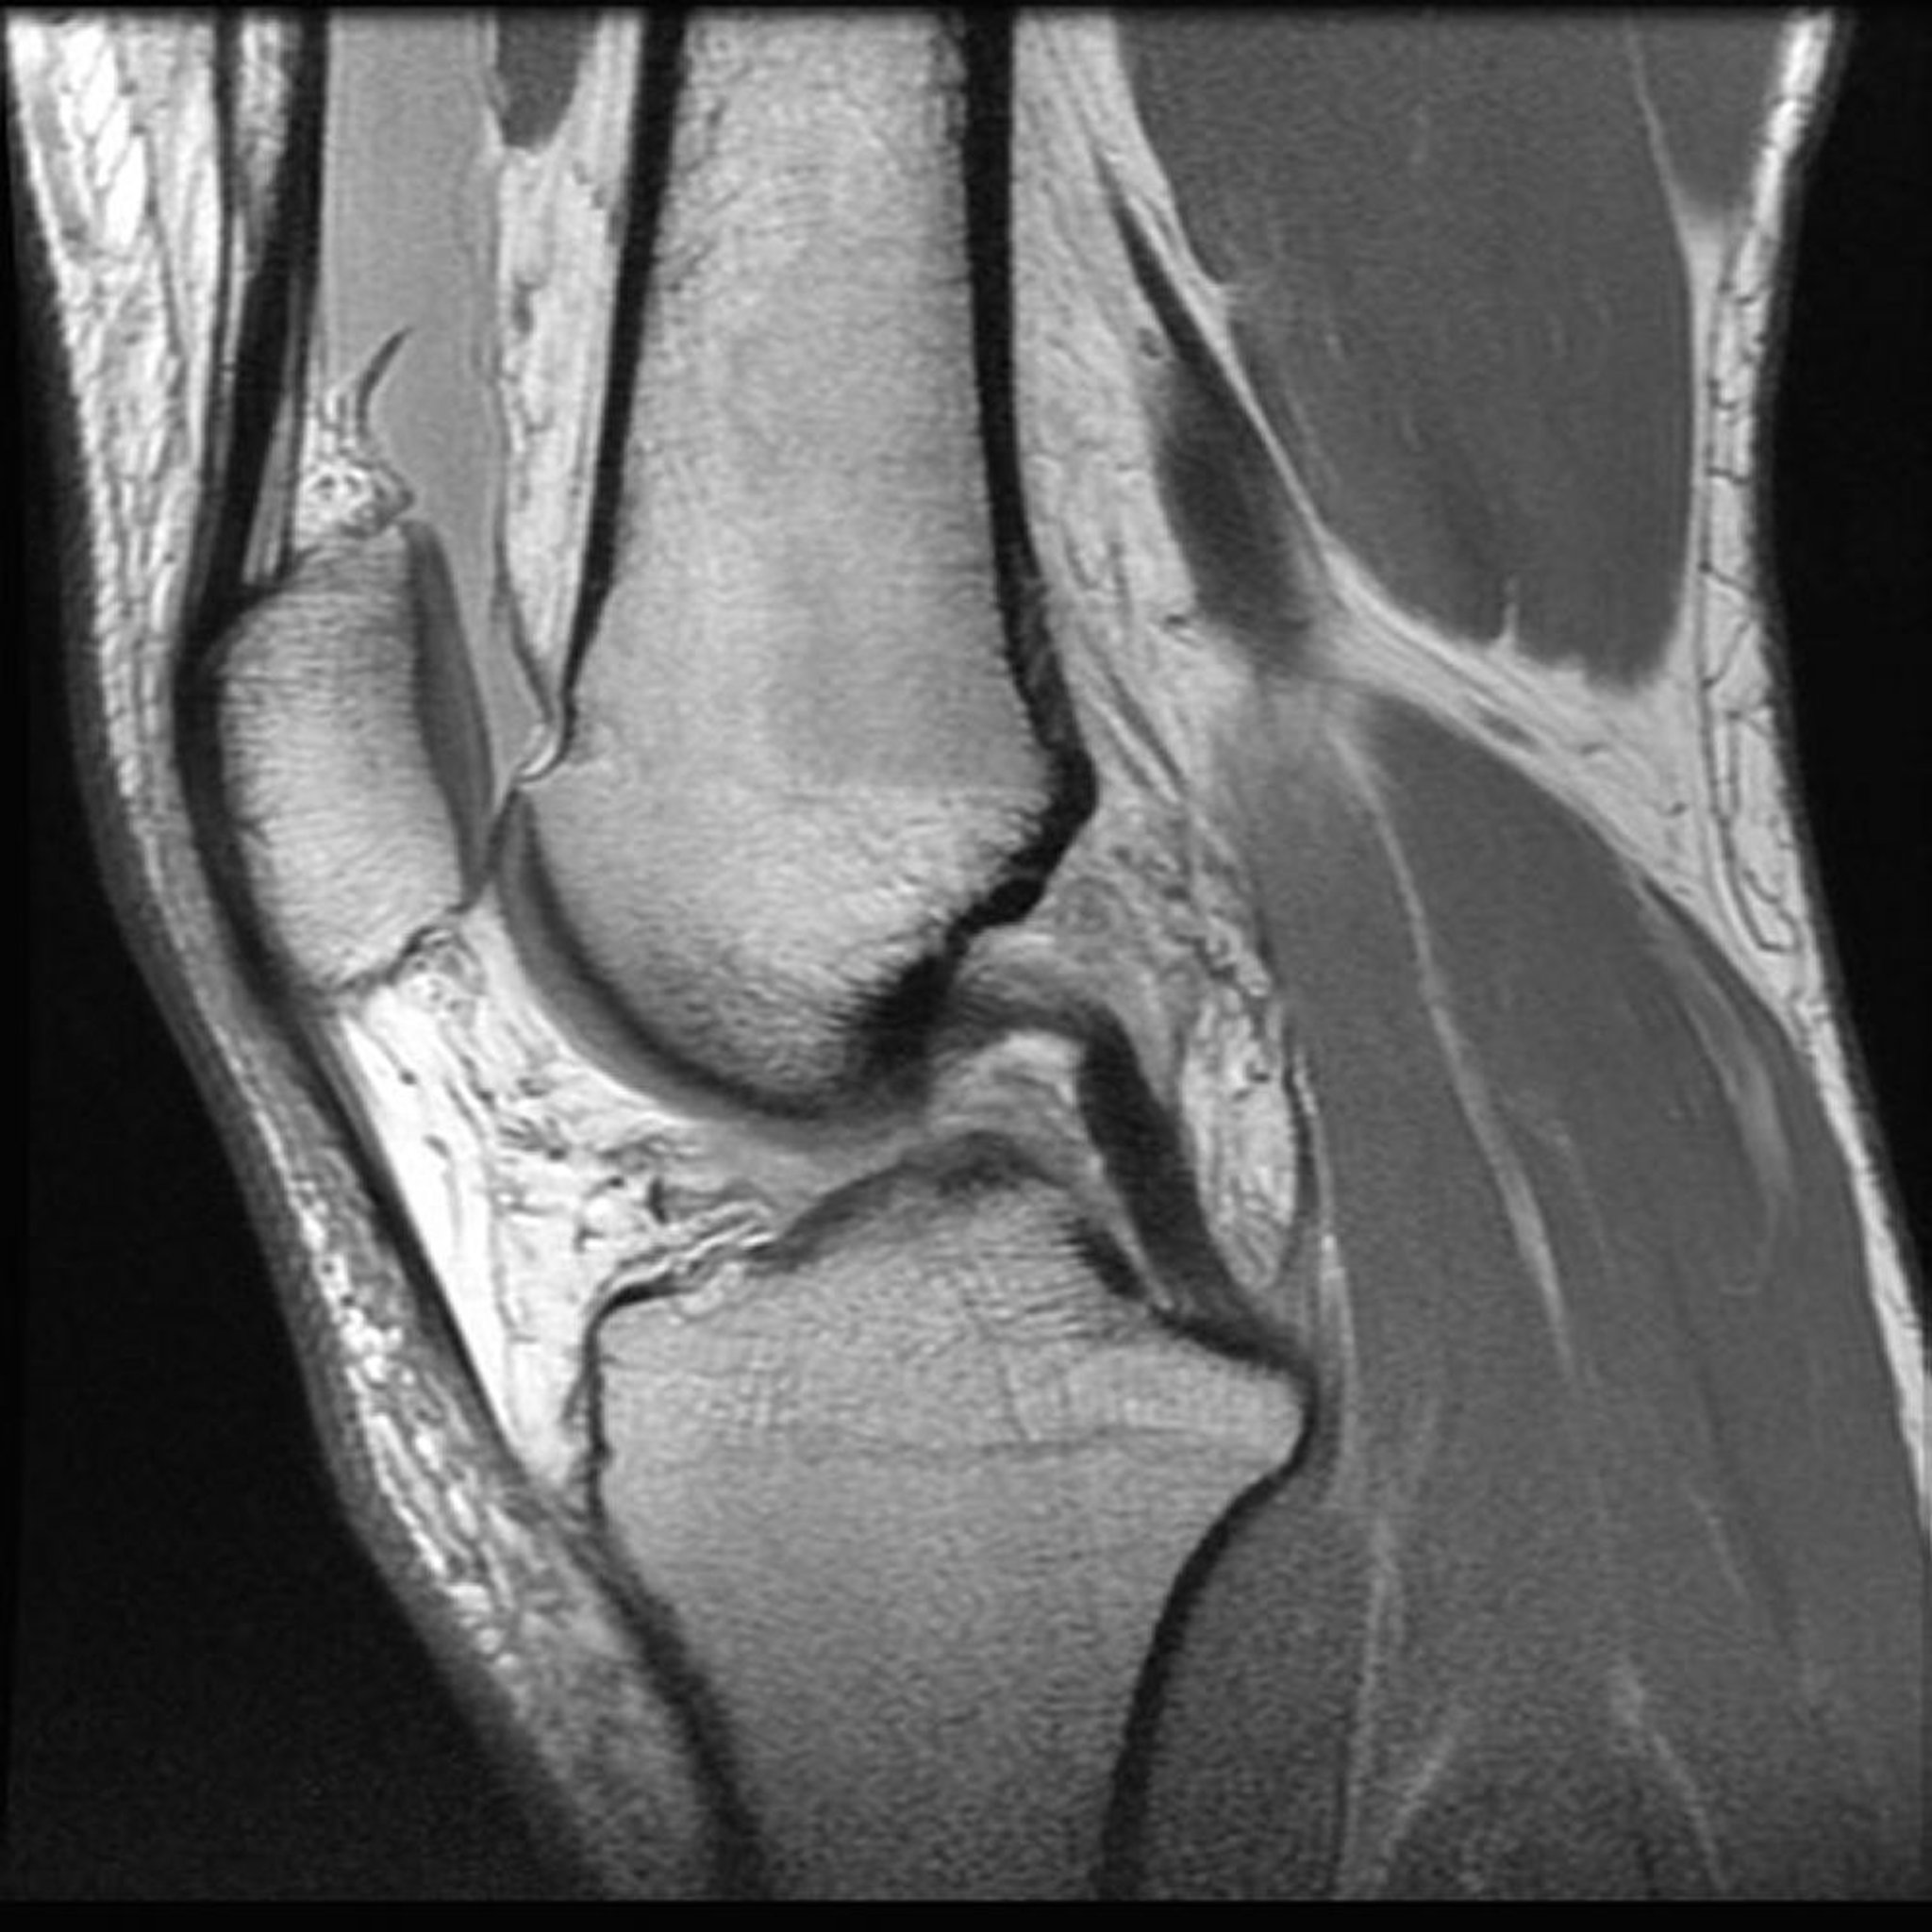 Resonancia magnética nuclear (RMN) de la rodilla